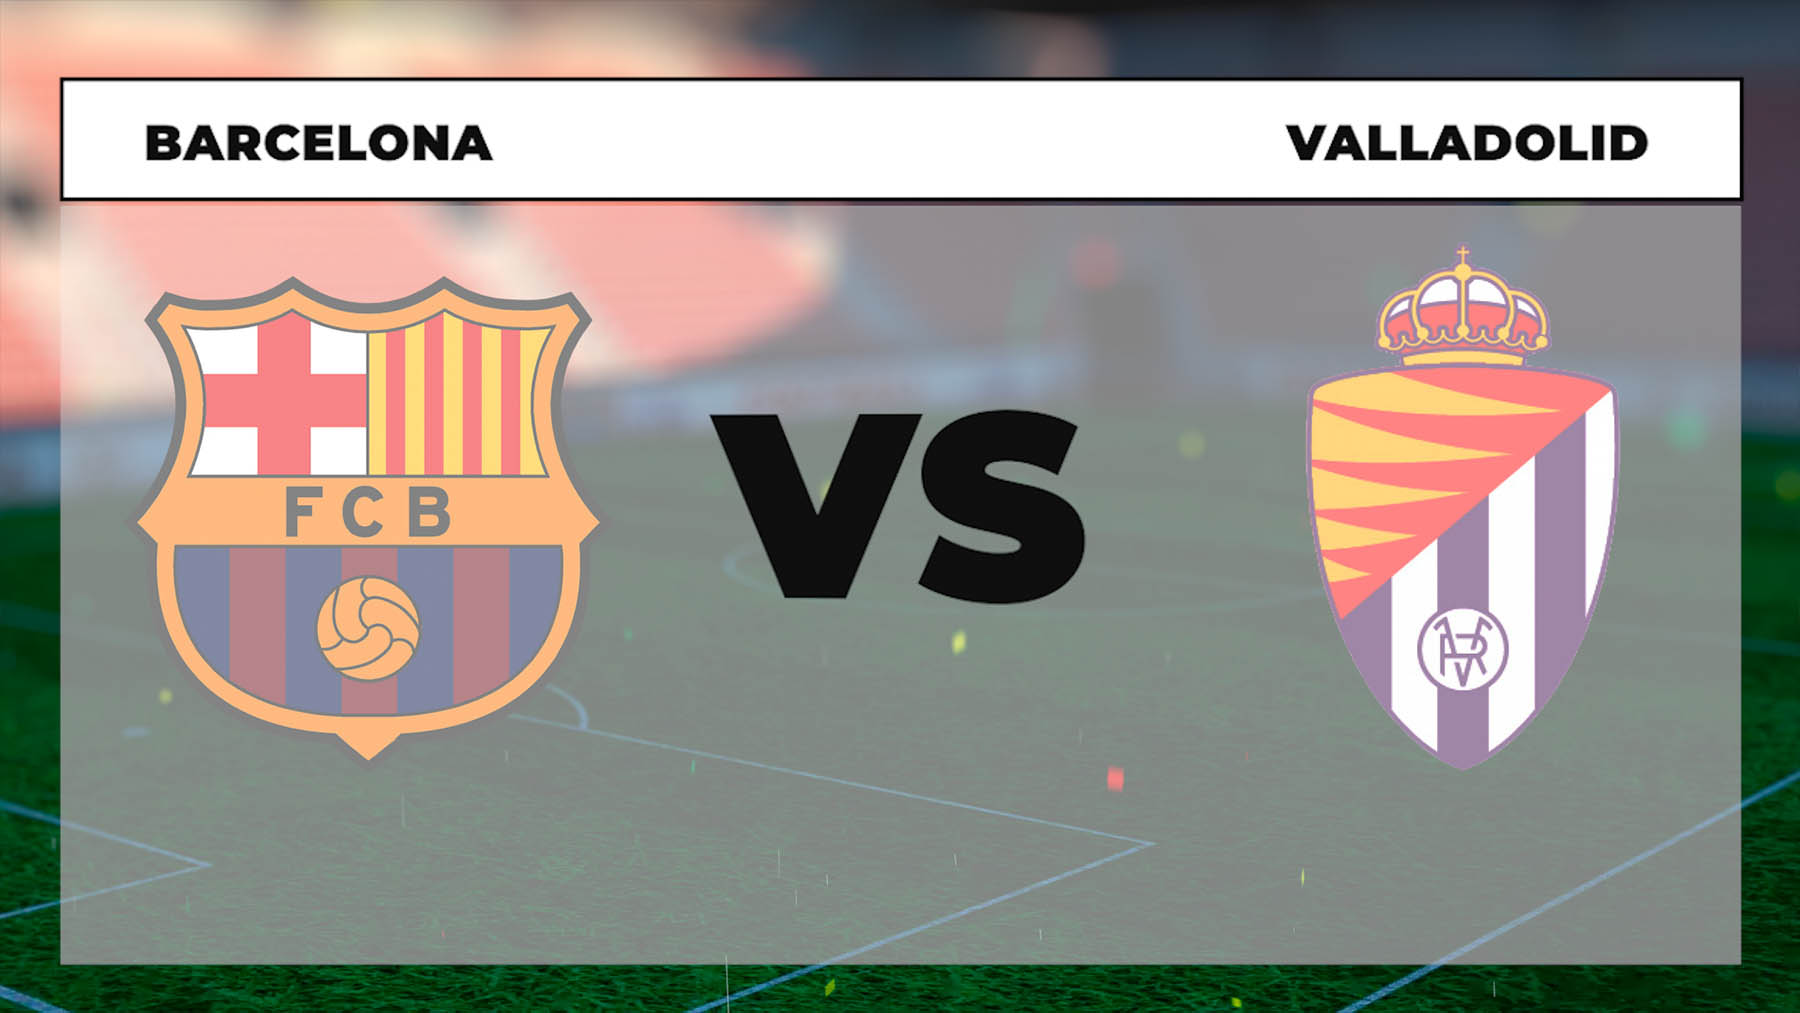 A qué hora es el Barcelona – Valladolid y dónde ver el partido hoy online gratis y por TV en directo.